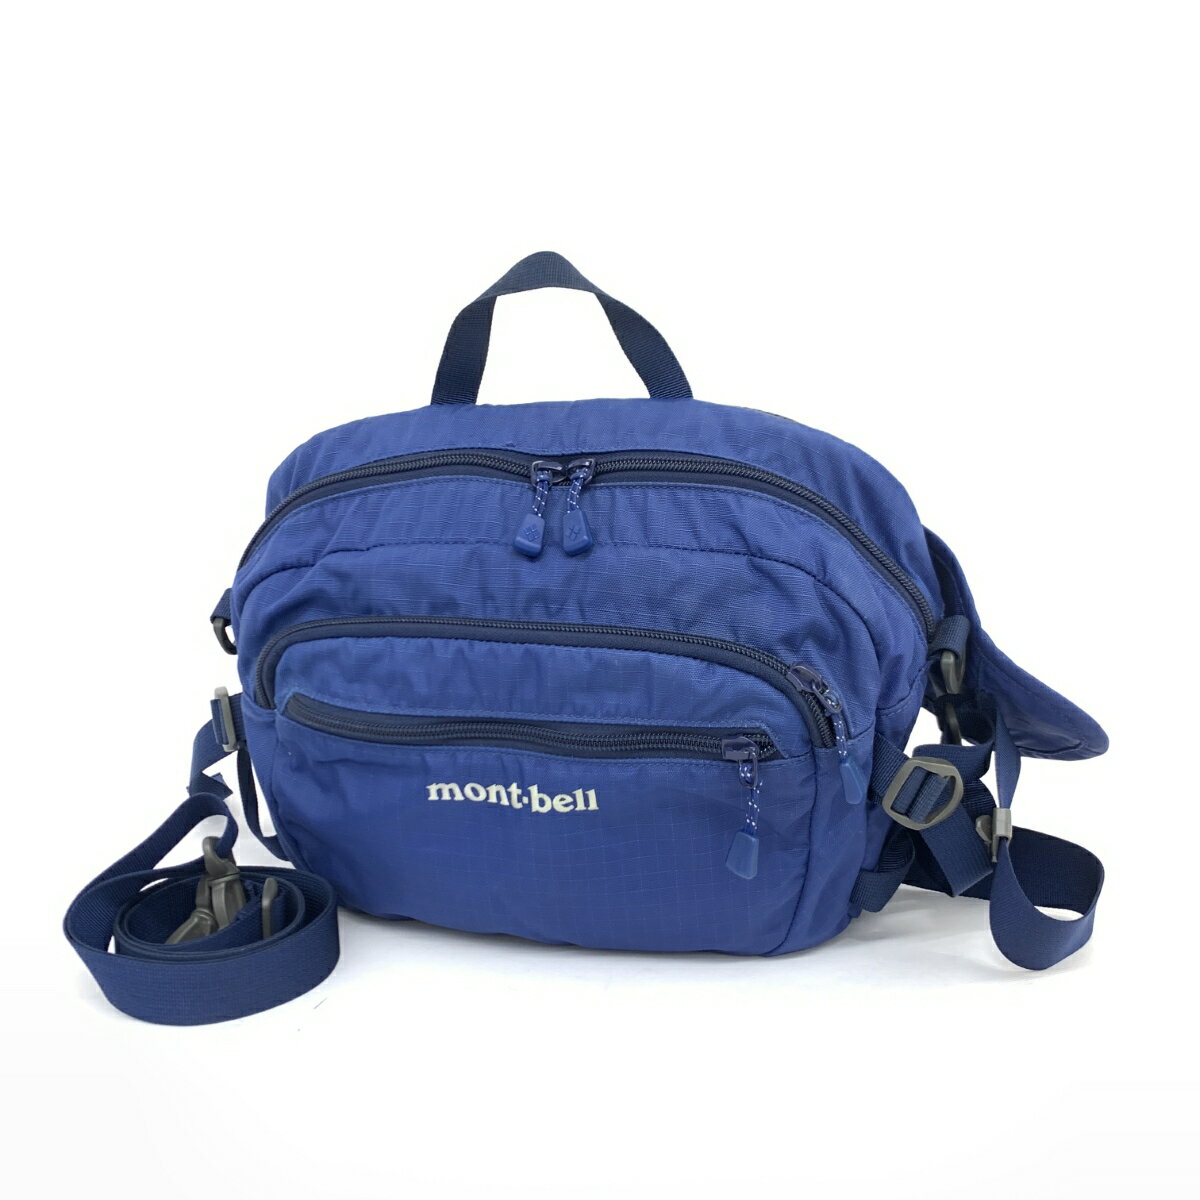 mont-bell モンベル ランバーパック 2WAYバッグ ブルー ナイロン メンズ ウエスト リュック bag 鞄 【中古】